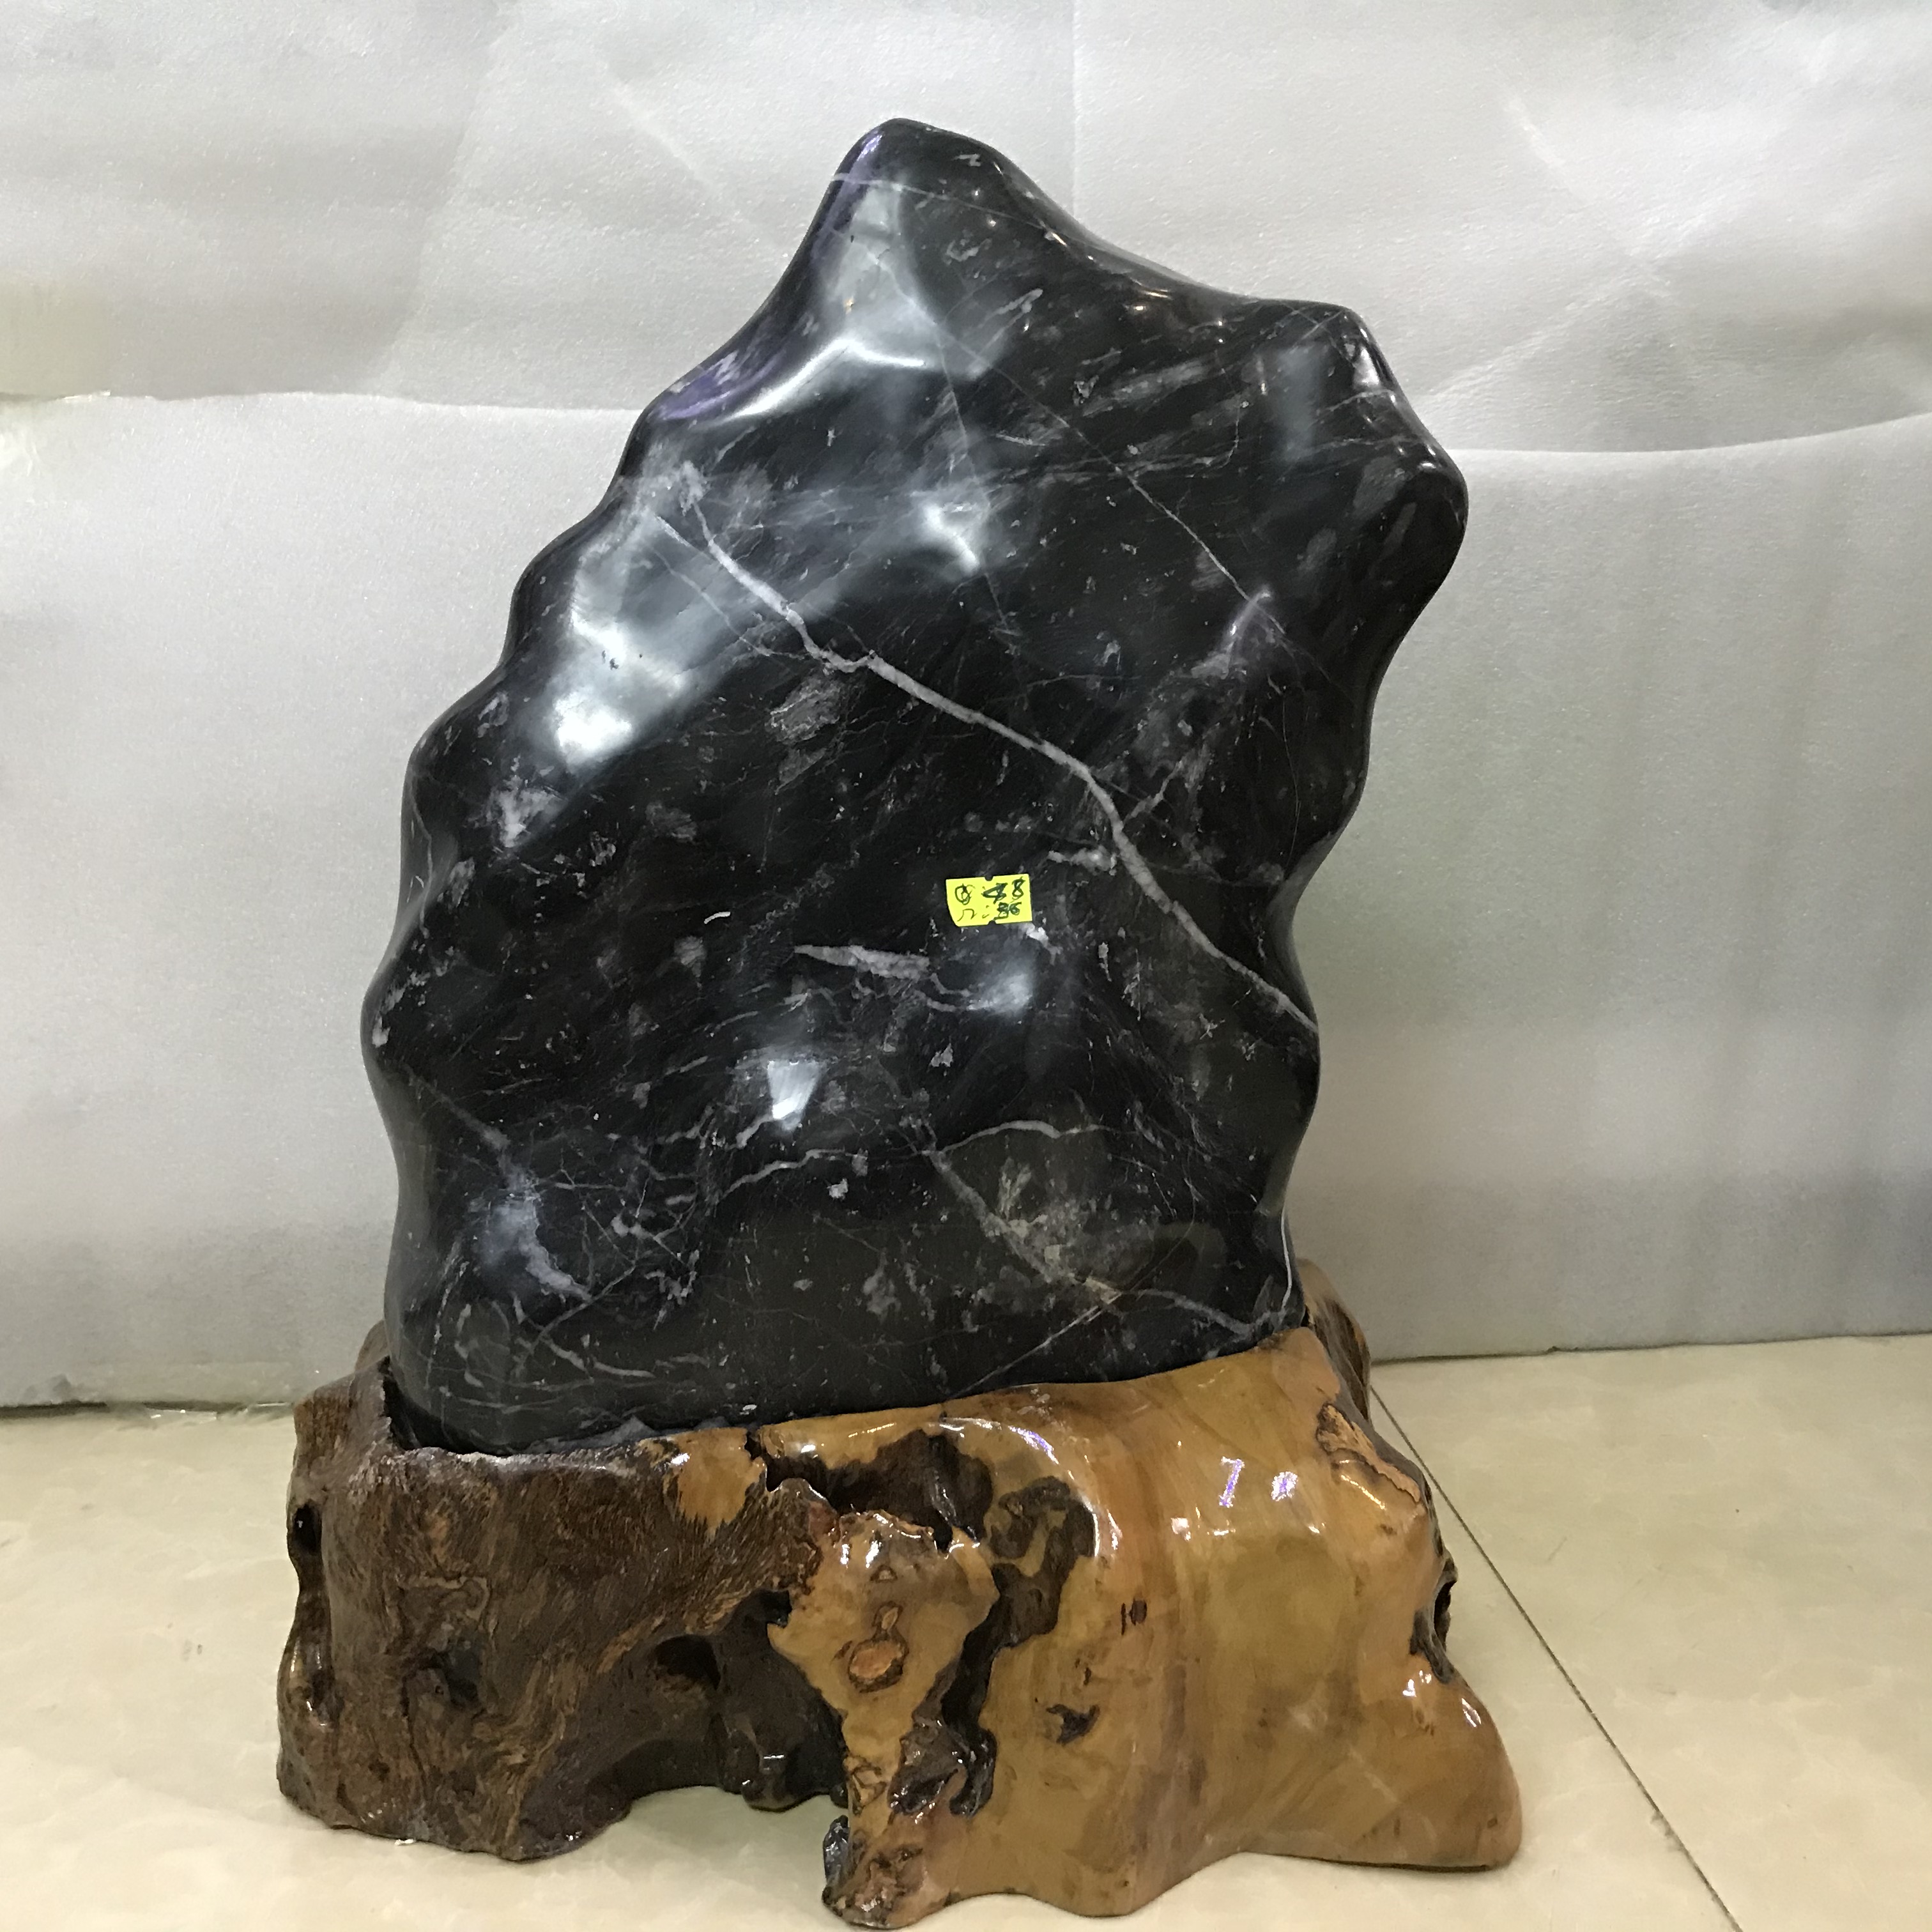 Cây đá tự nhiên, trụ đá màu đen nặng khoảng 25 kg cho người mệnh Mộc và mệnh Thủy CAO46xnang25kg